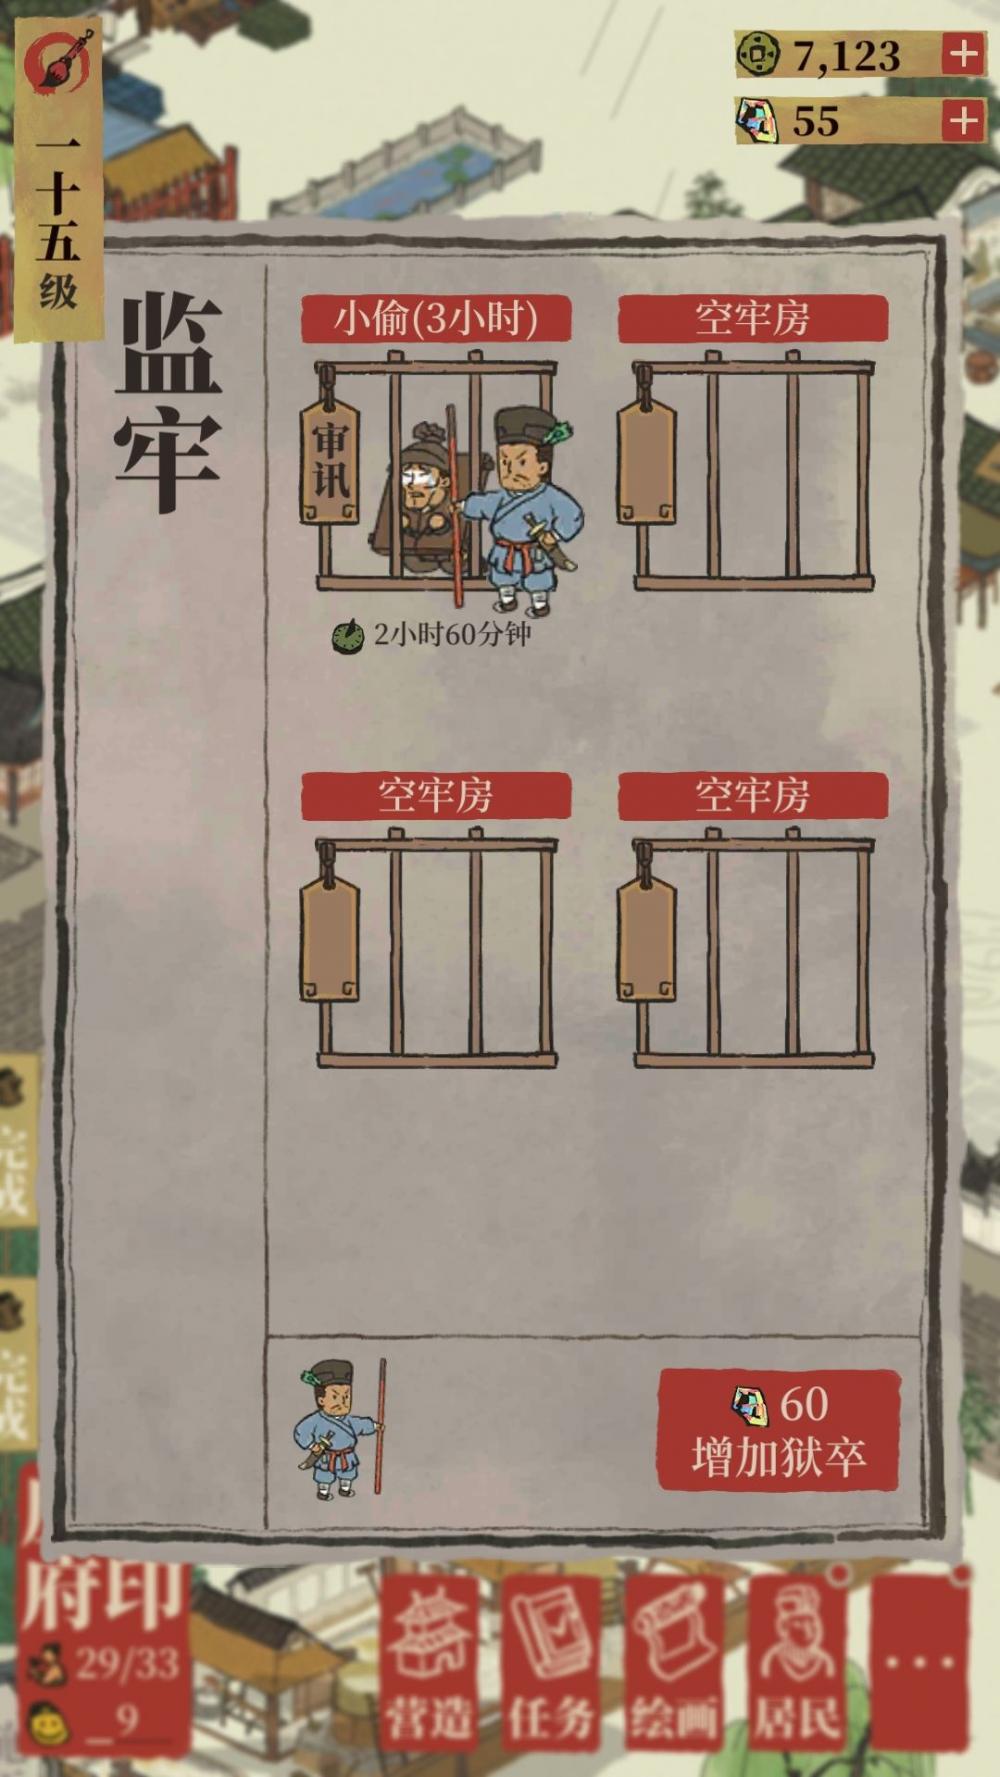 《江南百景图》：监牢使用指南  新闻资讯  第2张